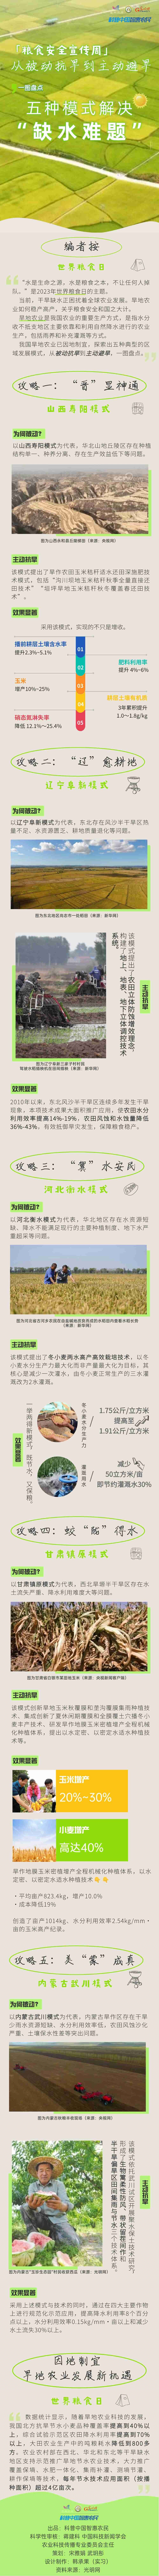 粮食安全宣传周丨旱作农业中的佼佼者！盘点中国五大典型区域发展攻略